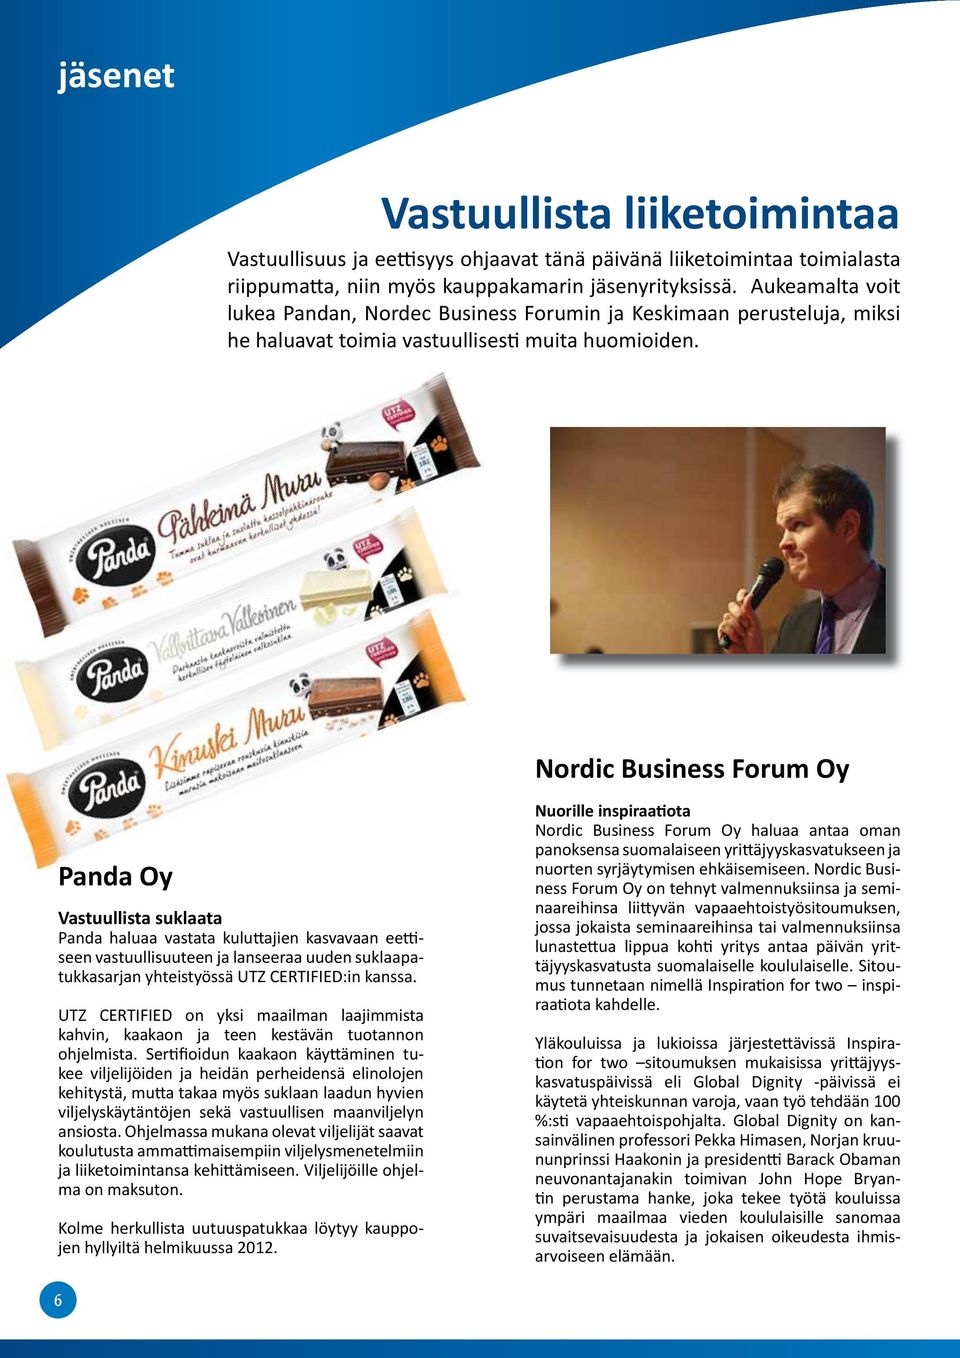 Nordic Business Forum Oy Panda Oy Vastuullista suklaata Panda haluaa vastata kuluttajien kasva vaan eettiseen vastuullisuuteen ja lansee raa uuden suklaapatukkasarjan yhteistyössä UTZ CERTIFIED:in